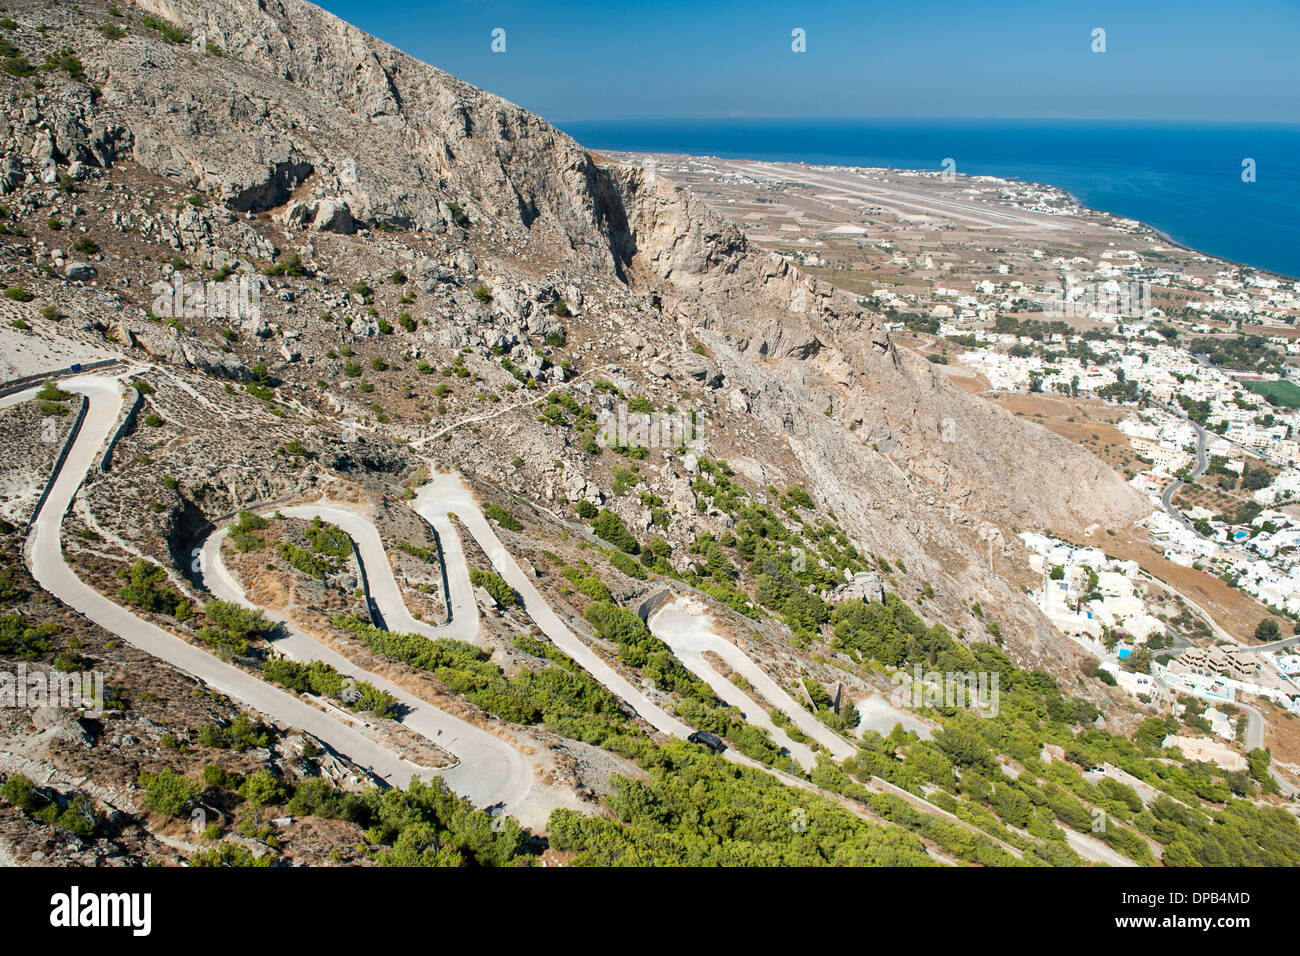 La route sinueuse qui mène de Kamari près des ruines de l'ancienne Thira sur Messavouno montagne sur l'île grecque de Santorin. Banque D'Images